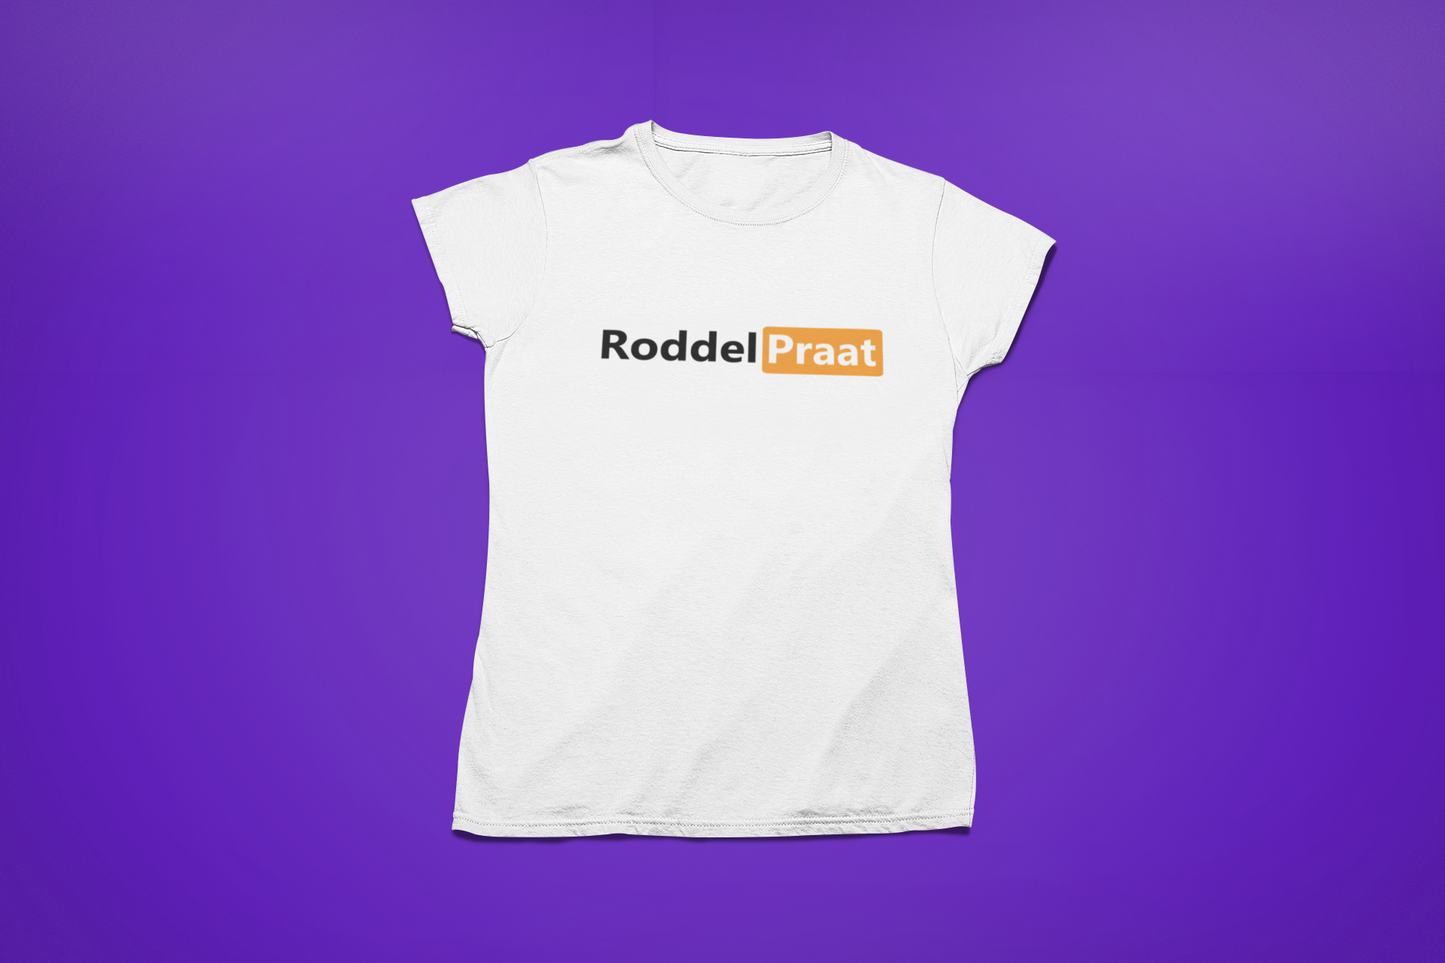 RoddelPraat Adult 18+ dames shirt (wit)